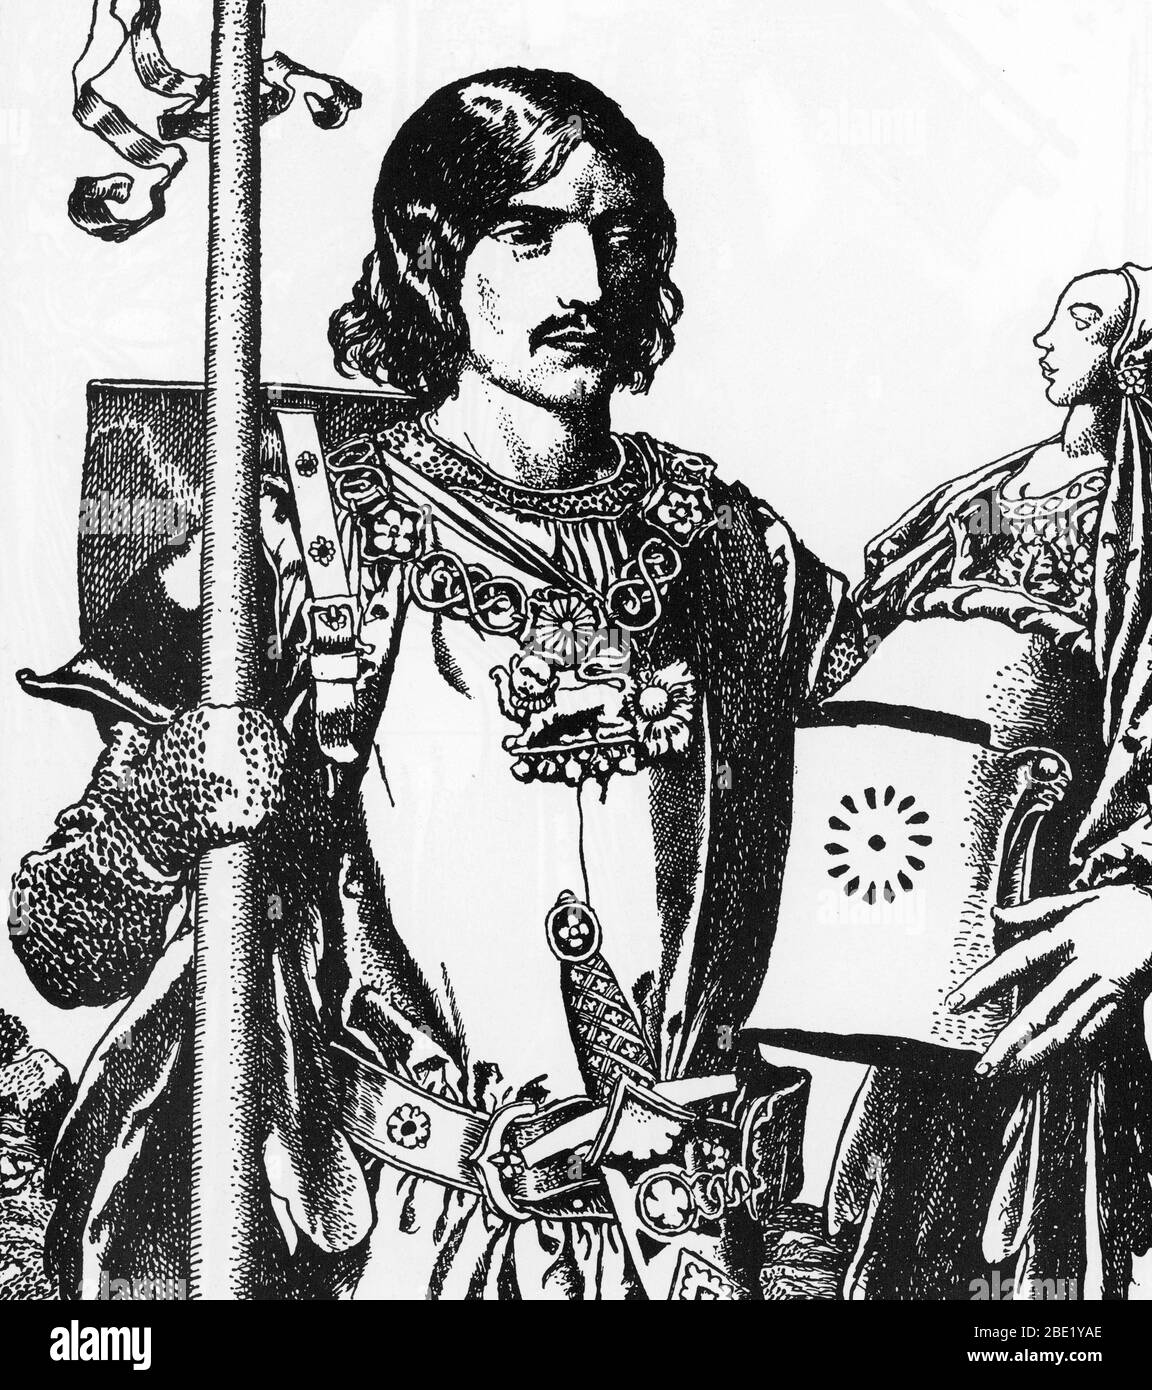 'Legende arthurienne : portrait de Lancelot du Lac, le chevalier blanc' (portrait of Lancelot (Launcelot) the white knight) Illustration d'Howard Pyle Stock Photo